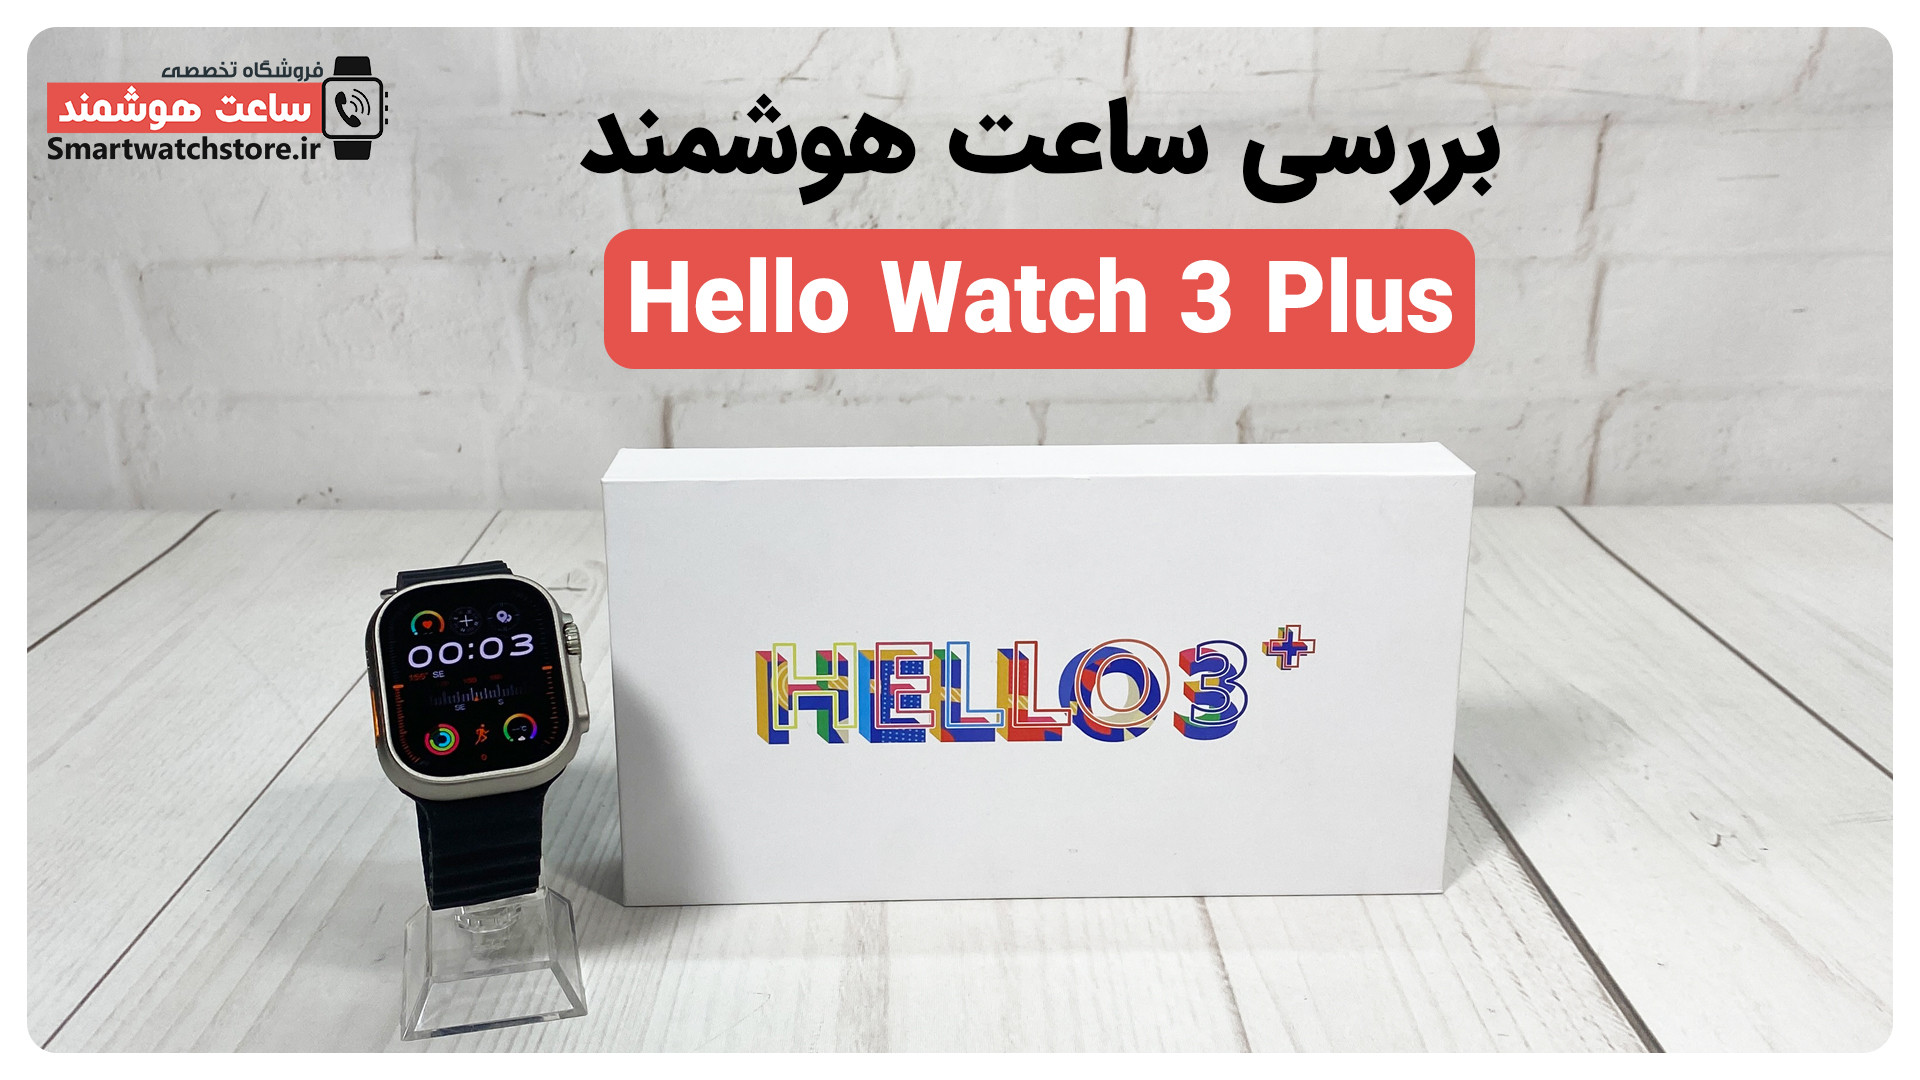 hello watch 3 plus smart watch